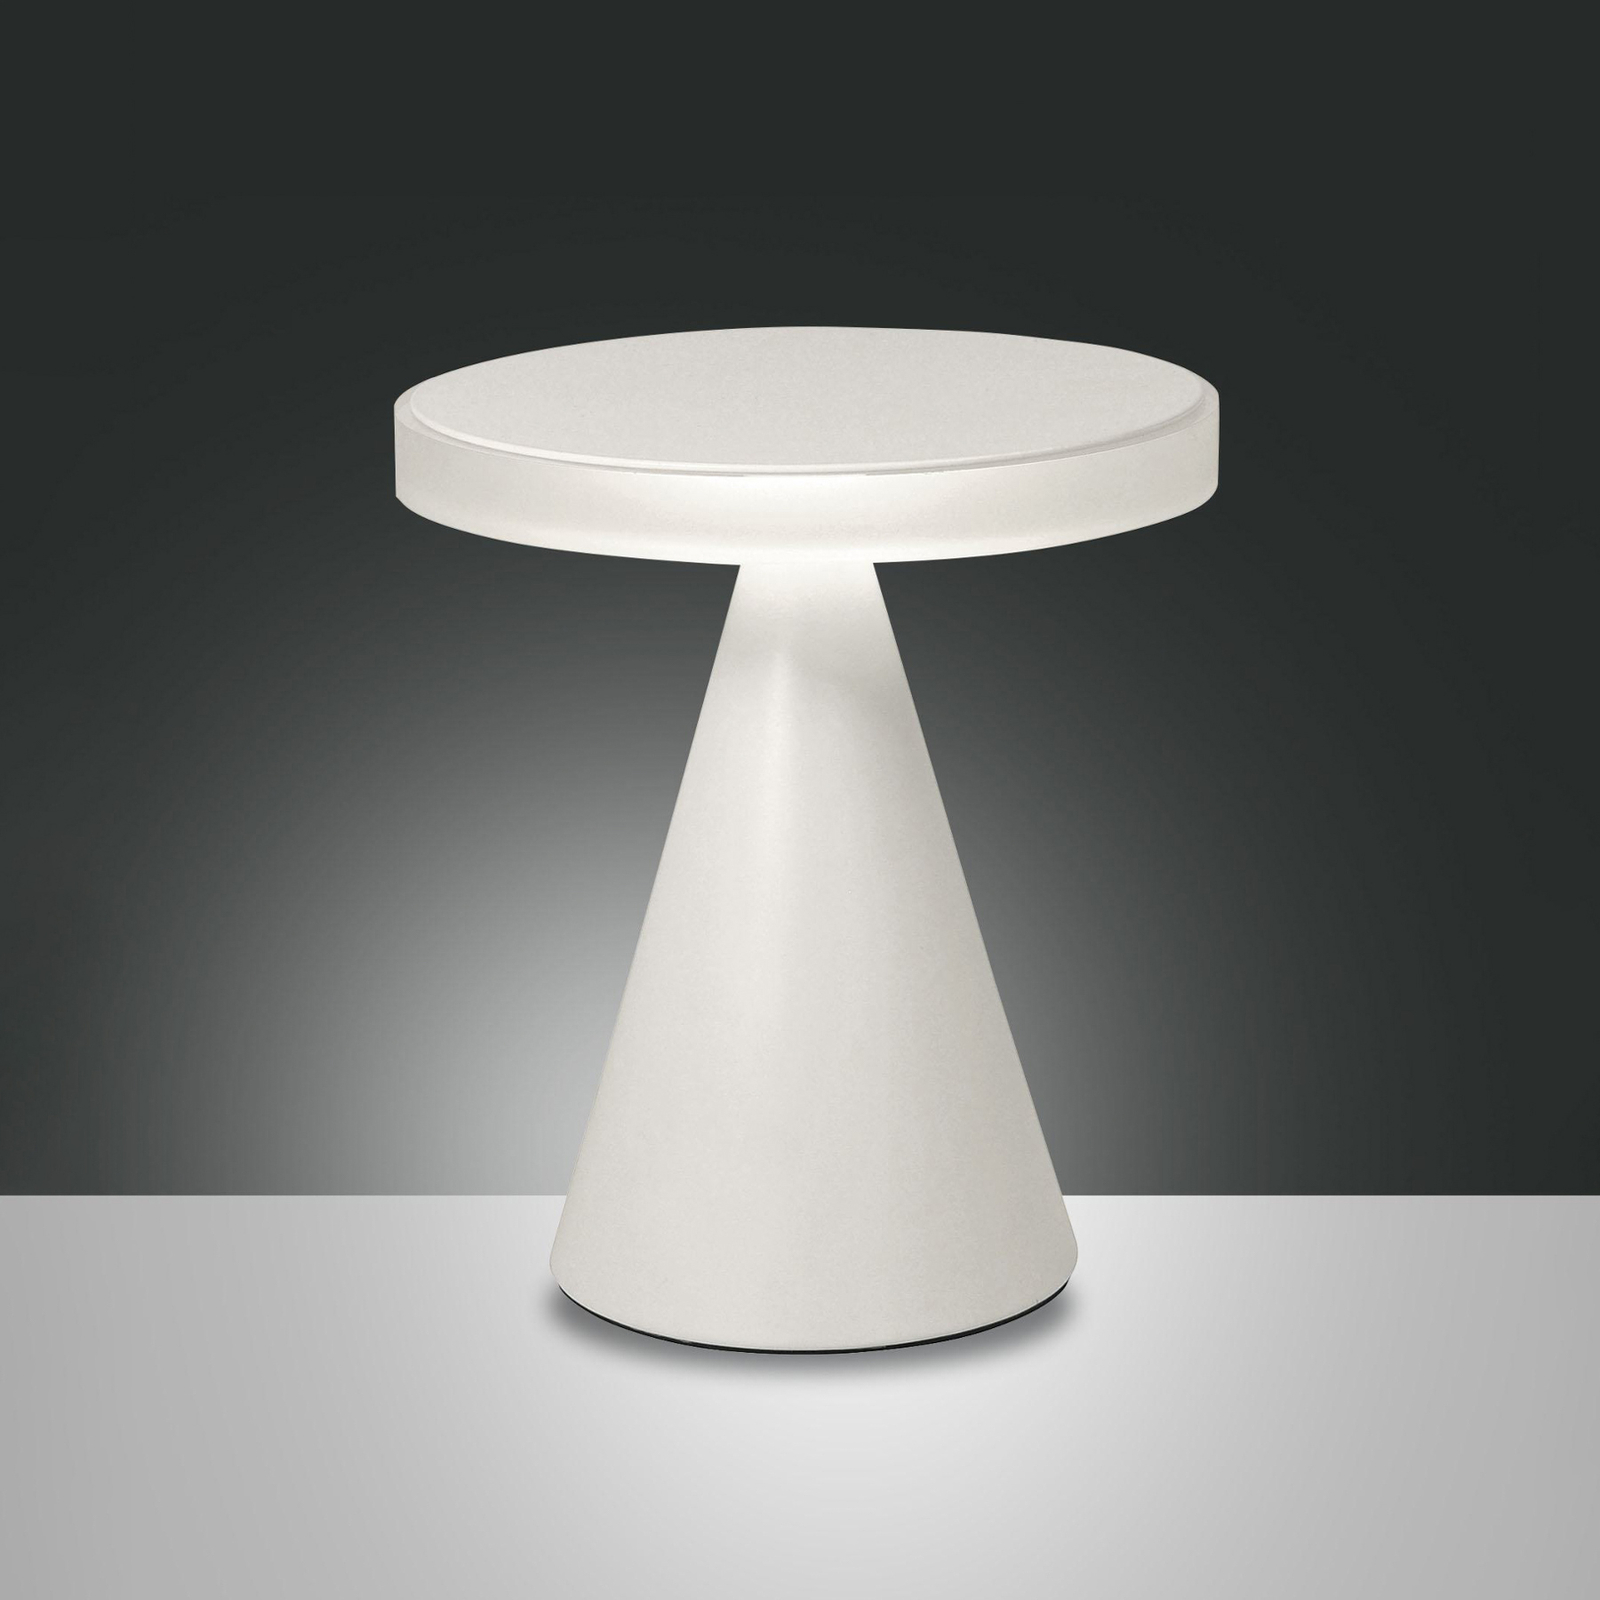 LED-Tischleuchte Neutra, Höhe 27 cm, weiß, Touchdimmer